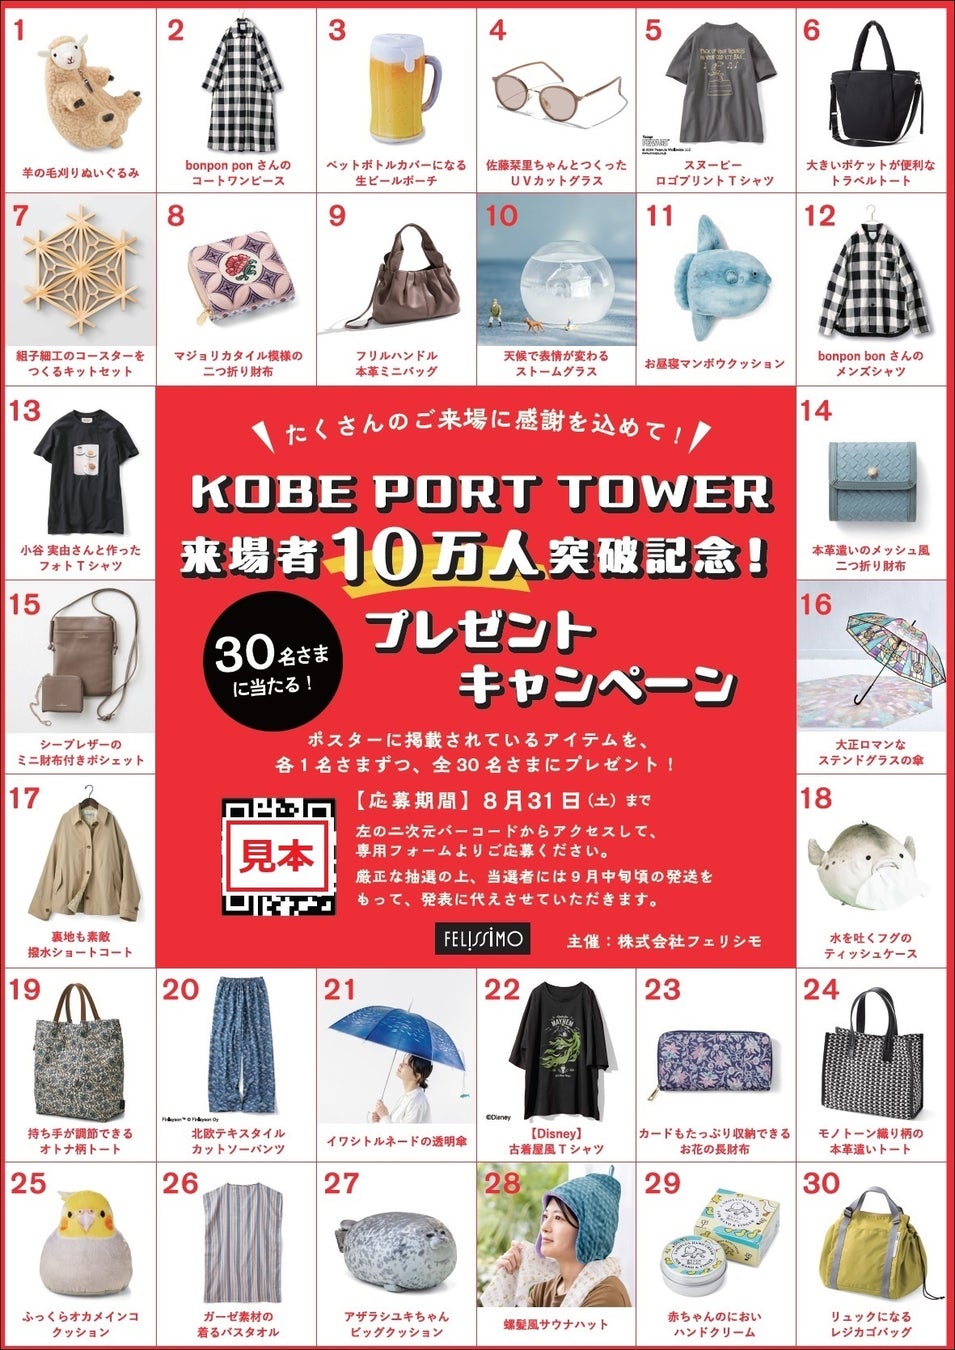 「神戸ポートタワー」来場者10万人突破記念プレゼントキャンペーンがスタート、館内（有料エリア）に掲出のポスターを見て参加しよう